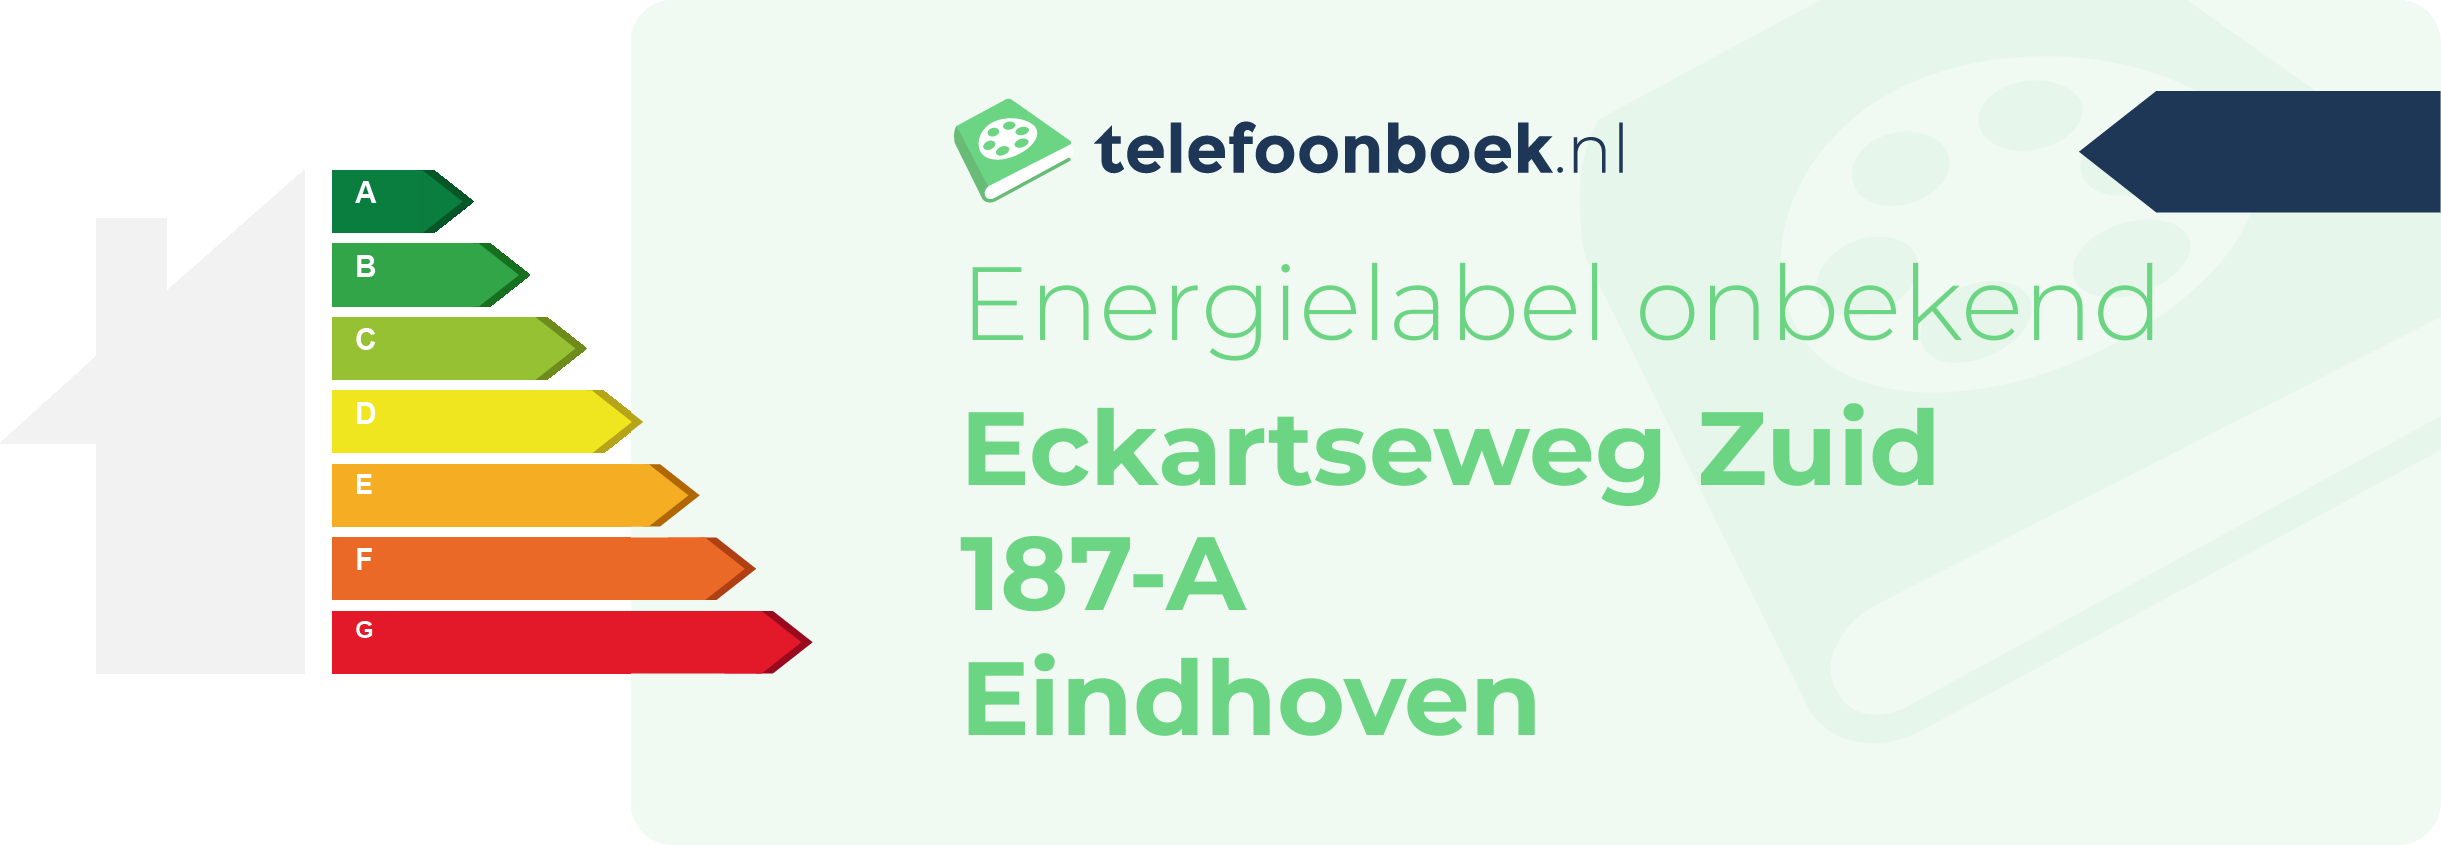 Energielabel Eckartseweg Zuid 187-A Eindhoven